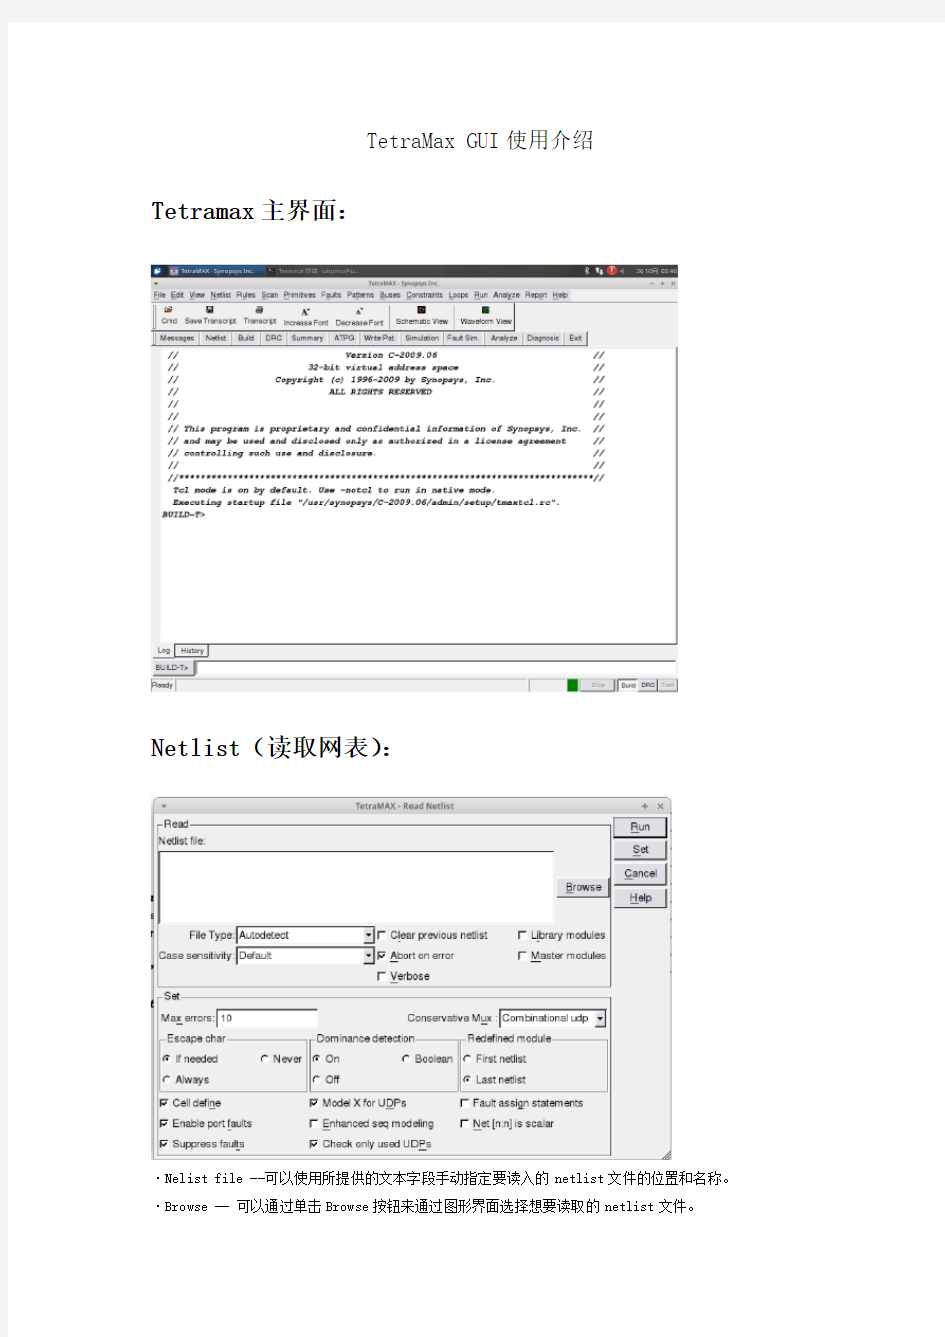 TetraMax软件图形化界面使用详细介绍